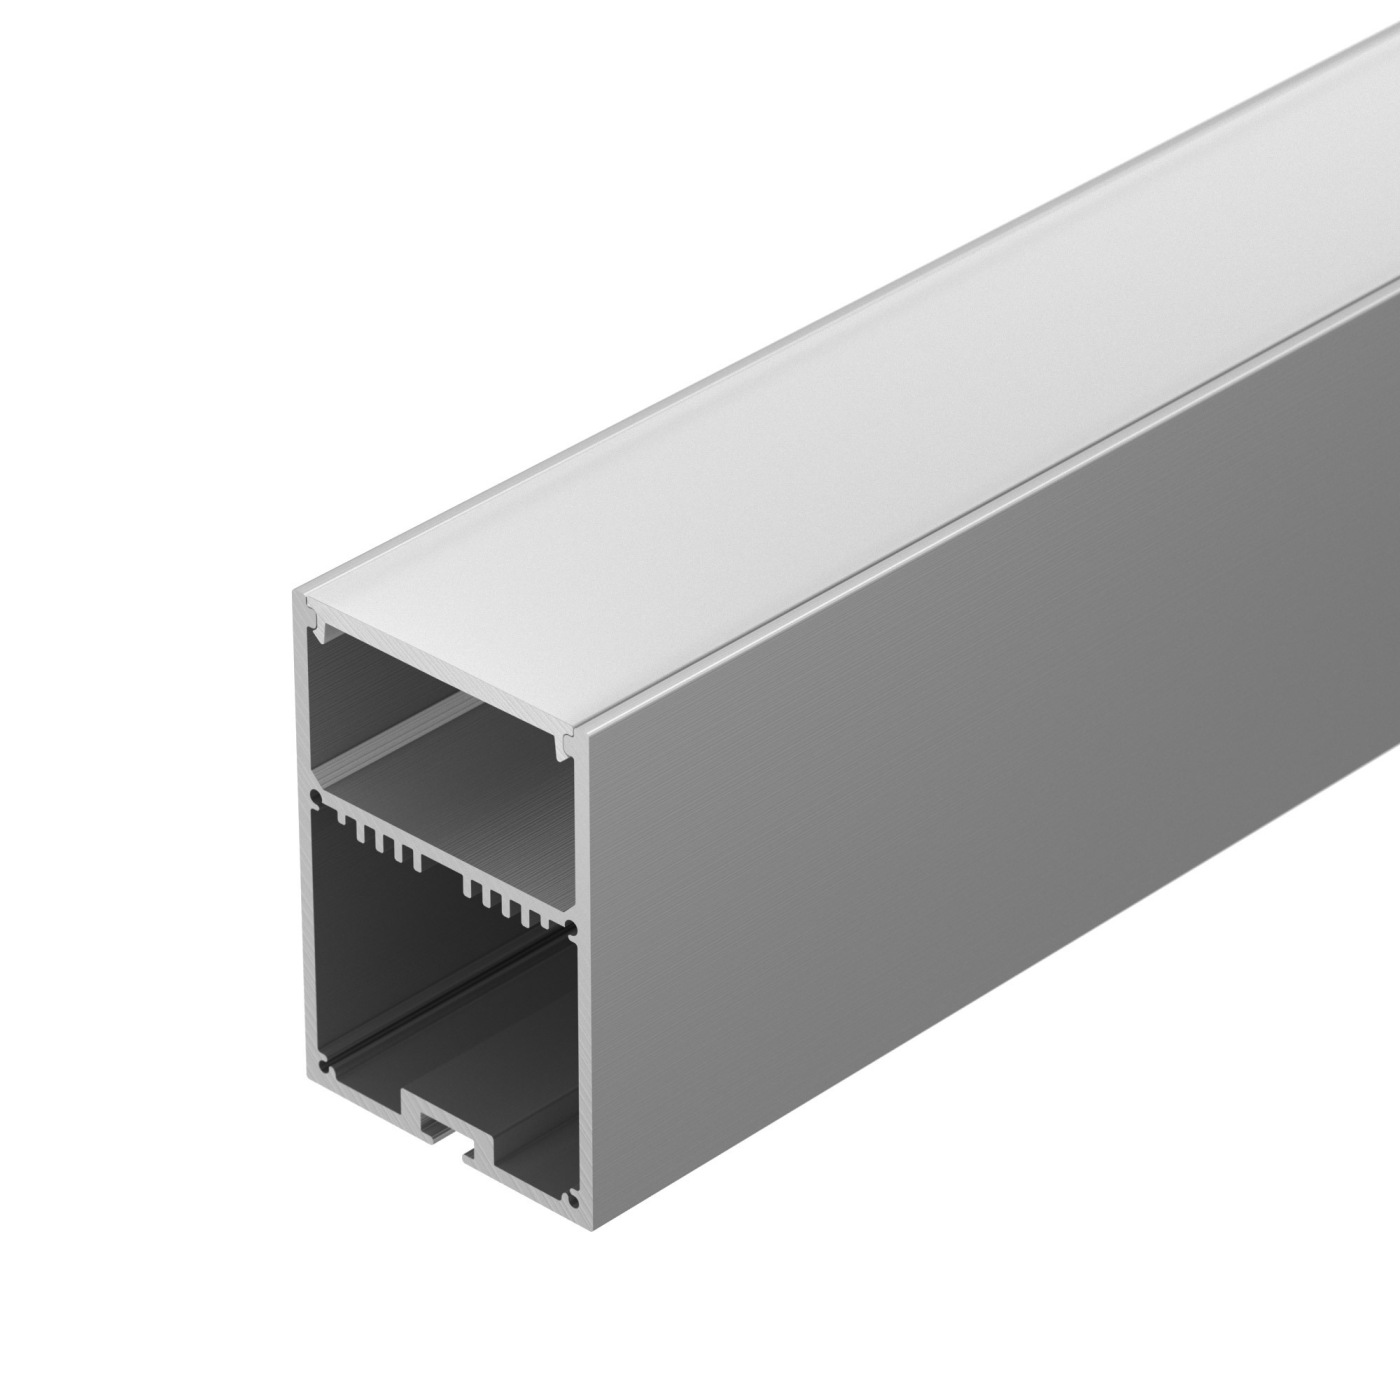 Профиль SL-LINE-4970-2000 ANOD профиль алюминиевый накладной подвесной с отсеком для бп серебро cab267